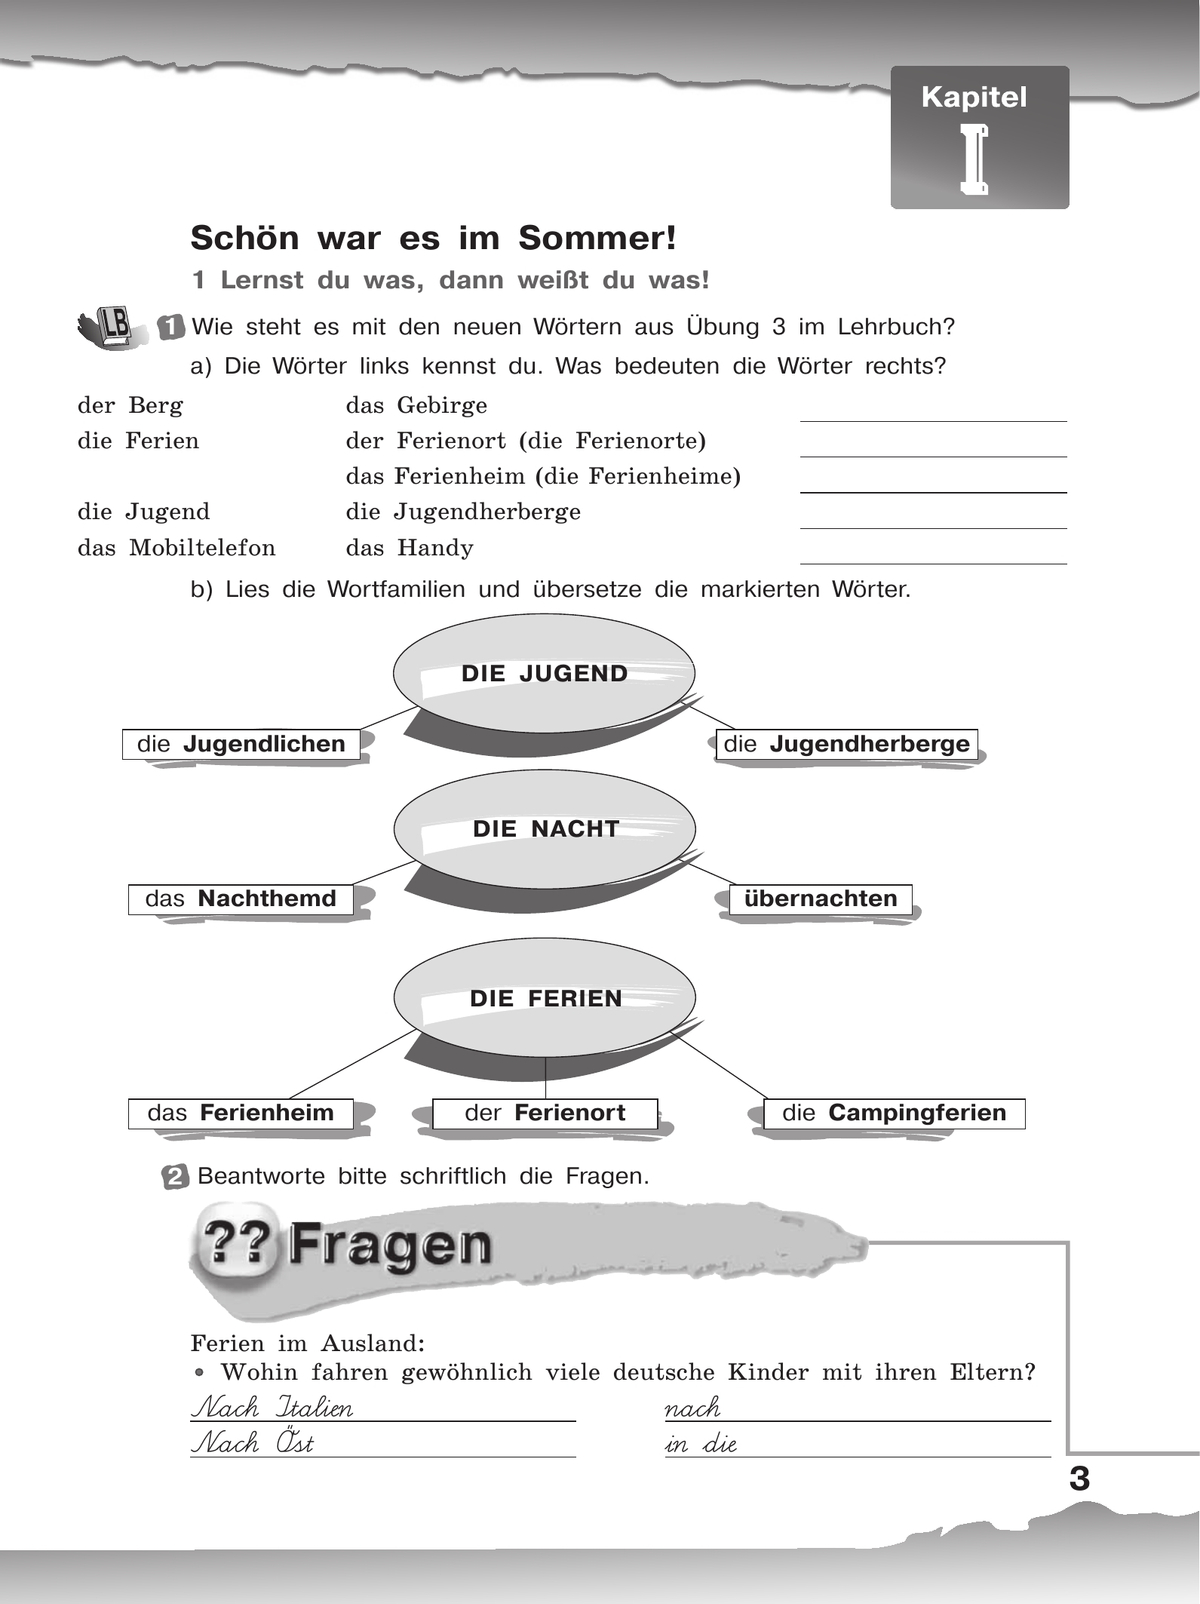 Немецкий язык. Рабочая тетрадь. 8 класс 2